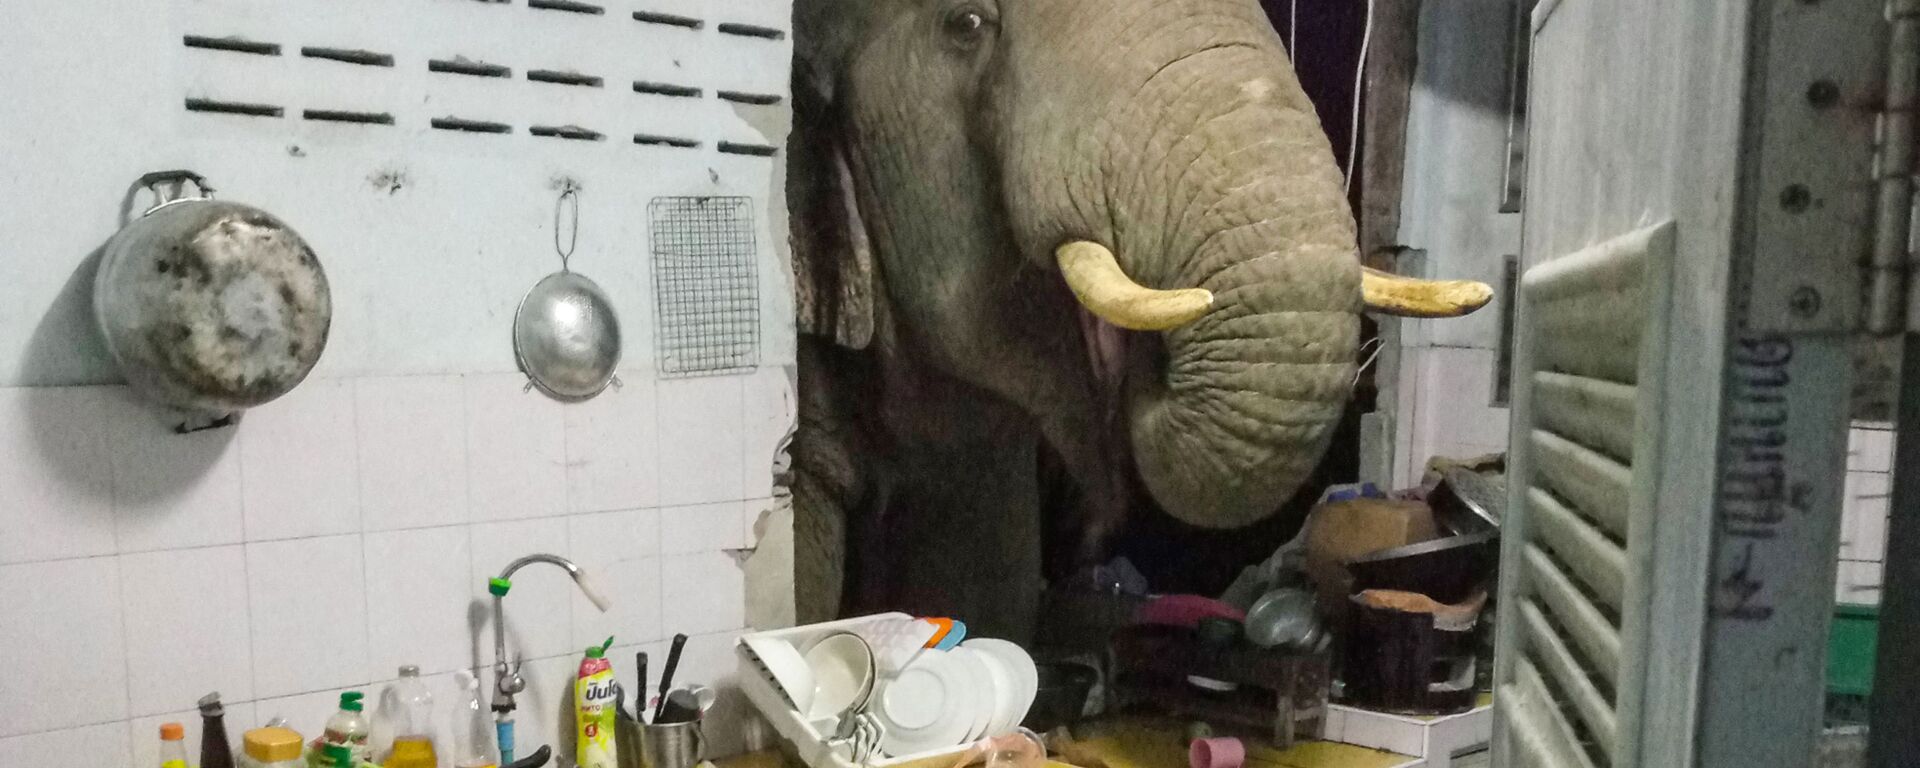 Radchadawan Peungprasopporn'un Facebook hesabında paylaştığı evinin mutfak duvarını yıkan Plai Bunchuay isimli 40 yaşındaki erkek fil - Sputnik Türkiye, 1920, 01.07.2021